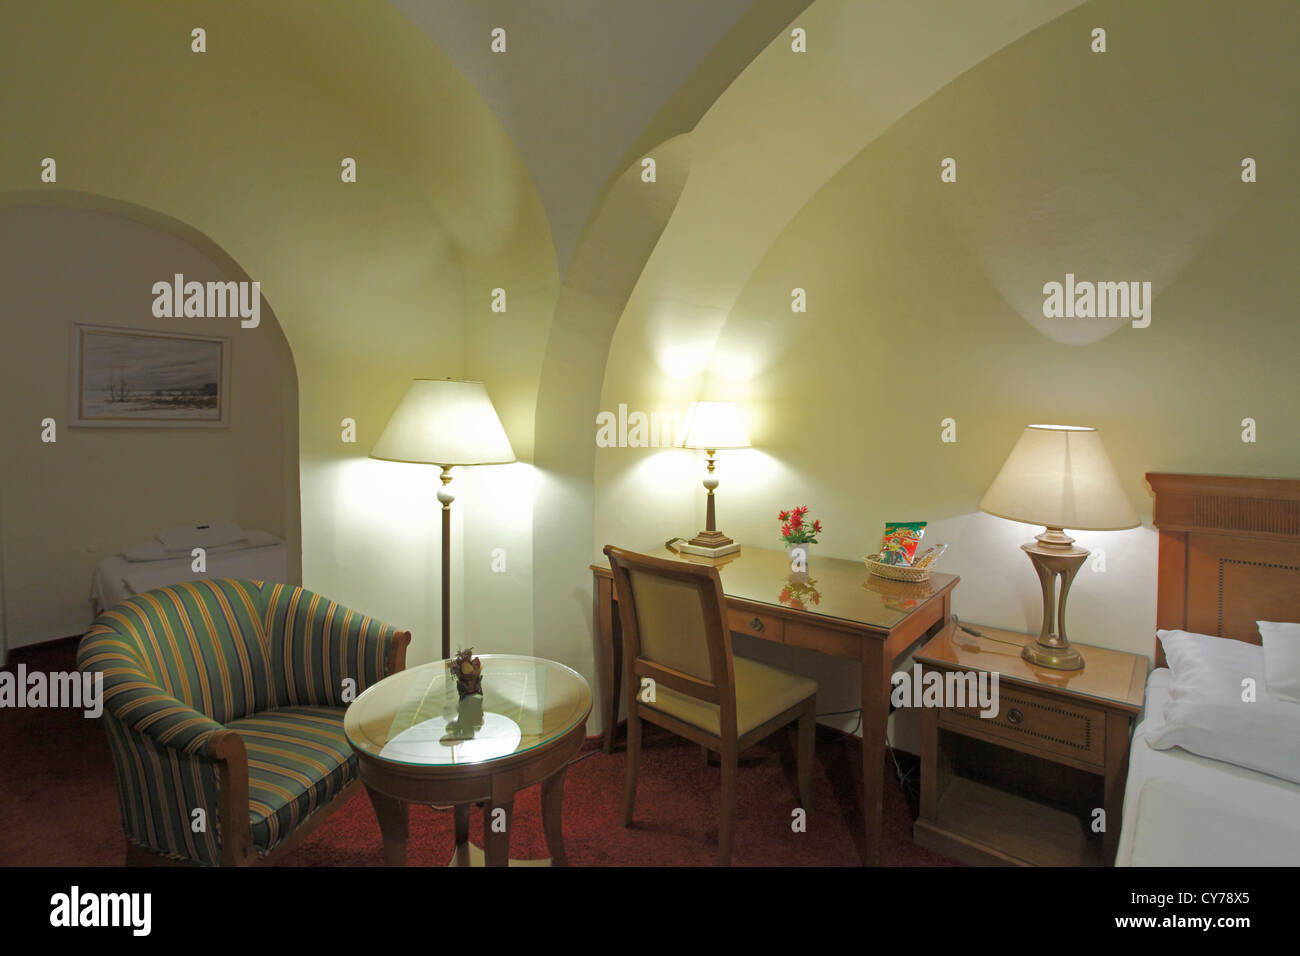 Hungary, Eger, Romantik Hotel, room, Stock Photo